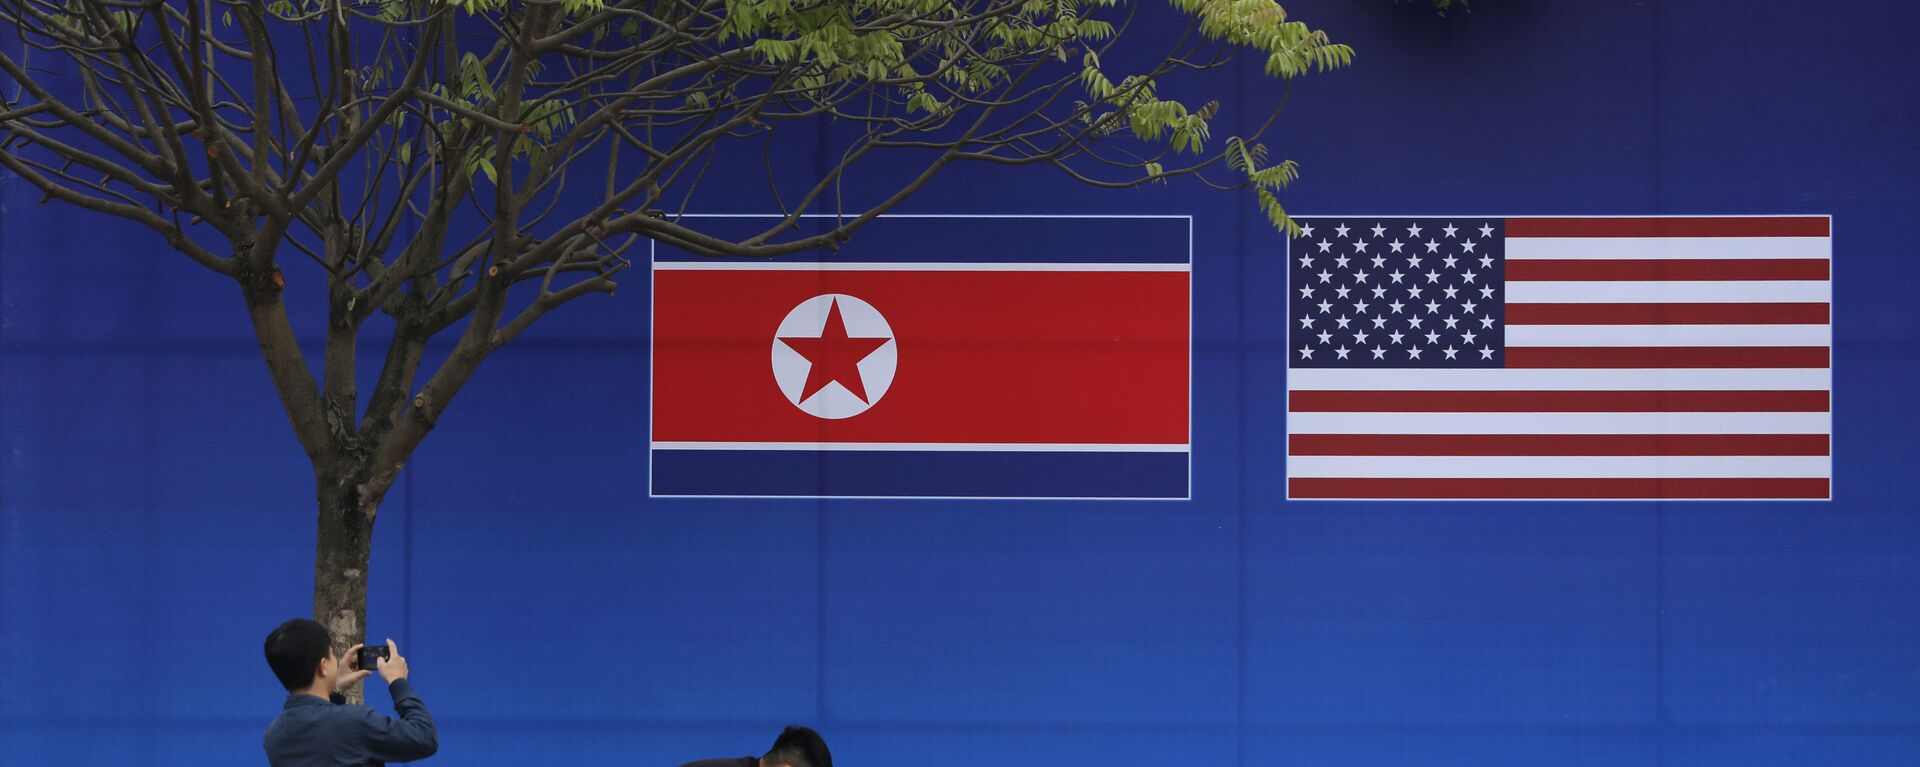 Cư dân Hà Nội tạo dáng trước hình ảnh lá cờ Bắc Triều Tiên và Mỹ trong những ngày diễn ra hội nghị thượng đỉnh Bắc Triều Tiên-Mỹ tại Hà Nội - Sputnik Việt Nam, 1920, 07.01.2022